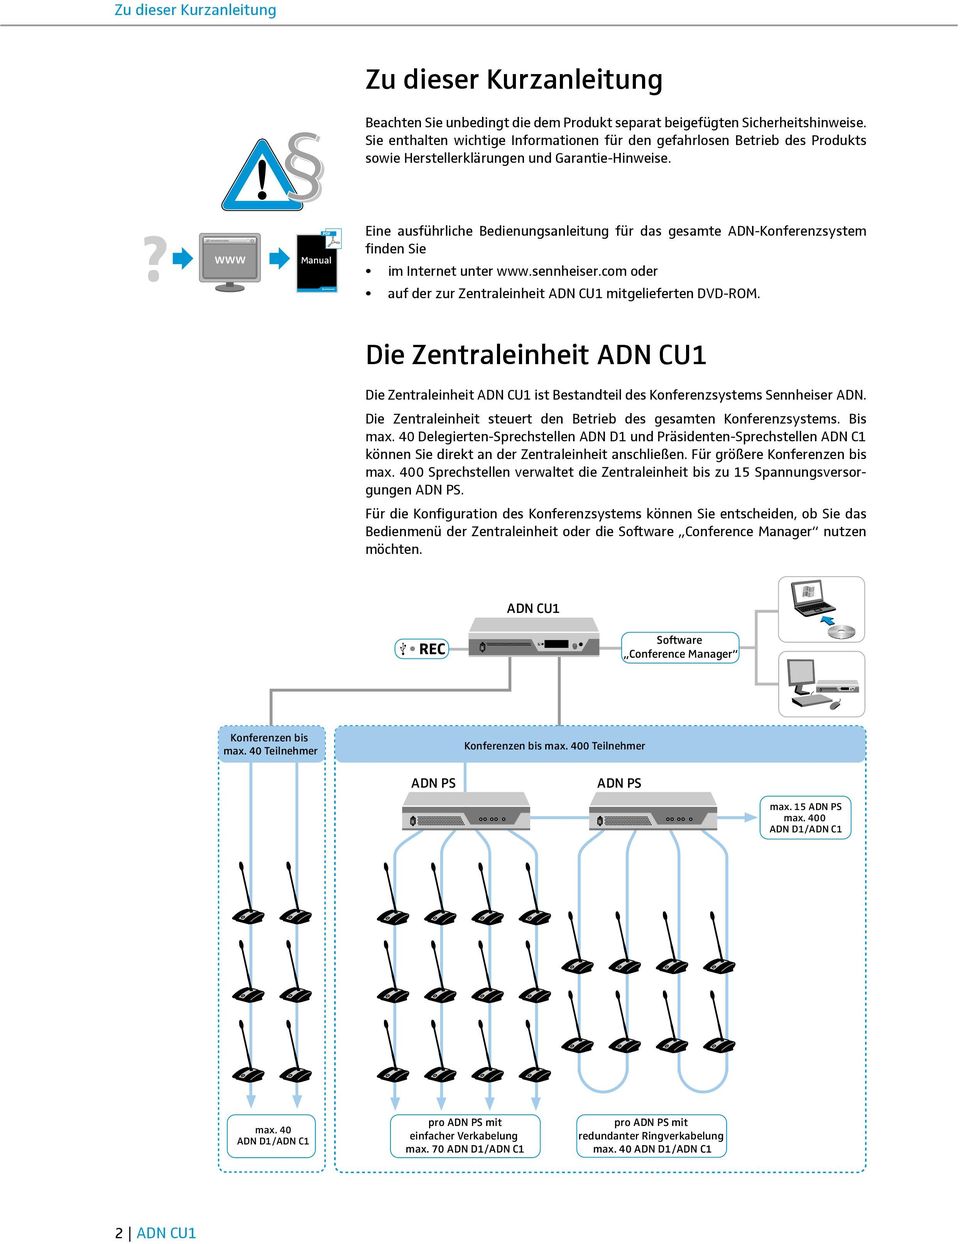 www Manual Eine ausführliche Bedienungsanleitung für das gesamte ADN-Konferenzsystem finden Sie im Internet unter www.sennheiser.com oder auf der zur Zentraleinheit mitgelieferten DVD-ROM.